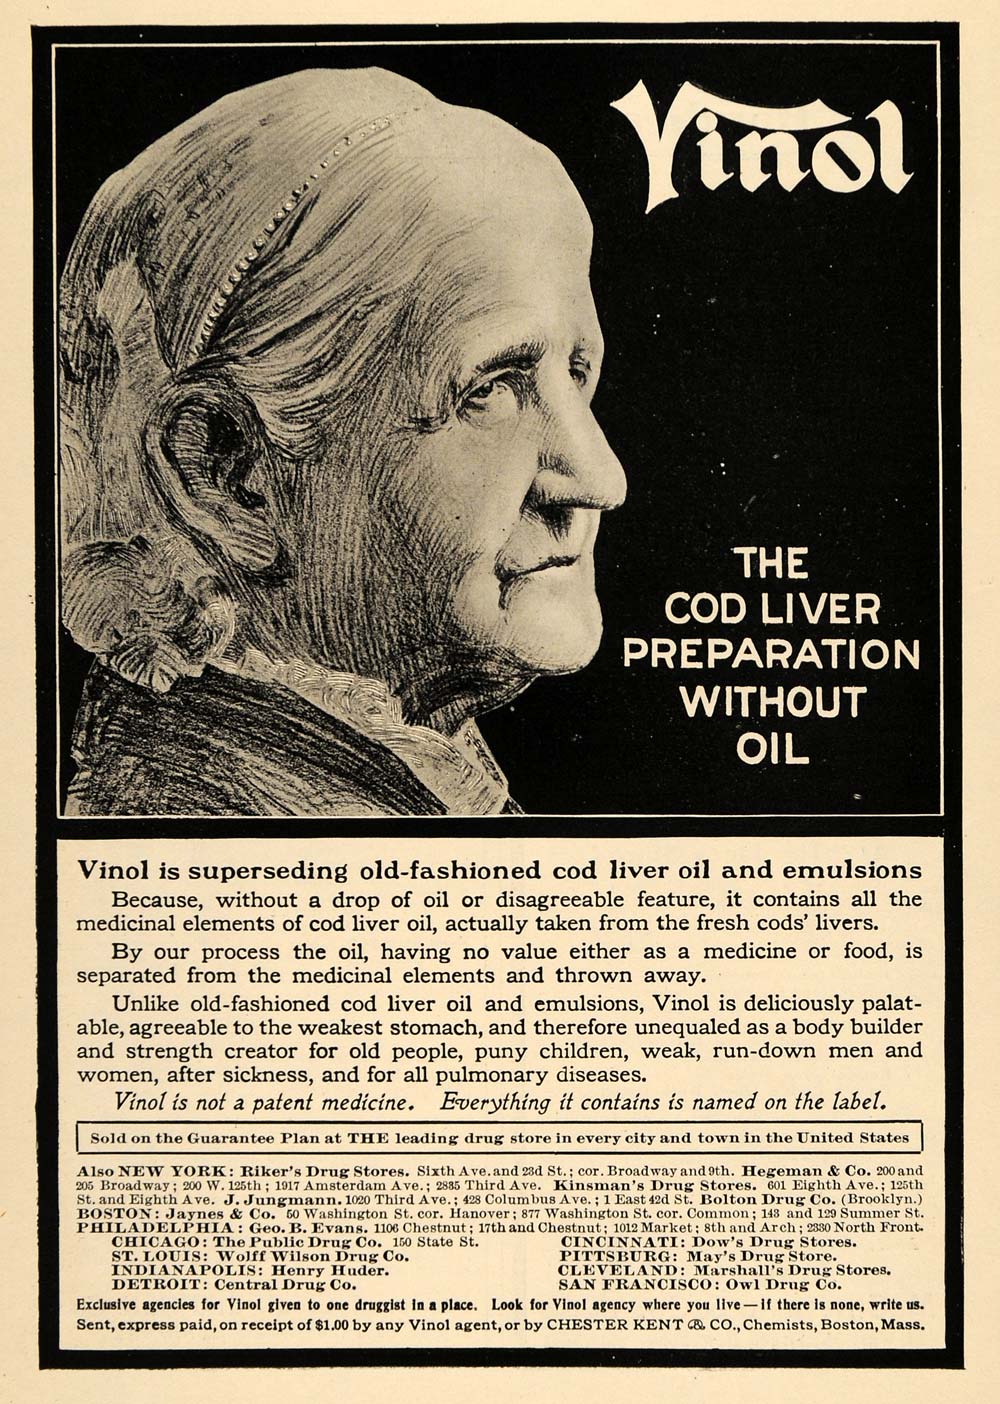 1906 Ad Vinol Cod Liver Oil Emulsion Medicinal Women - ORIGINAL ADVERTISING TOM3